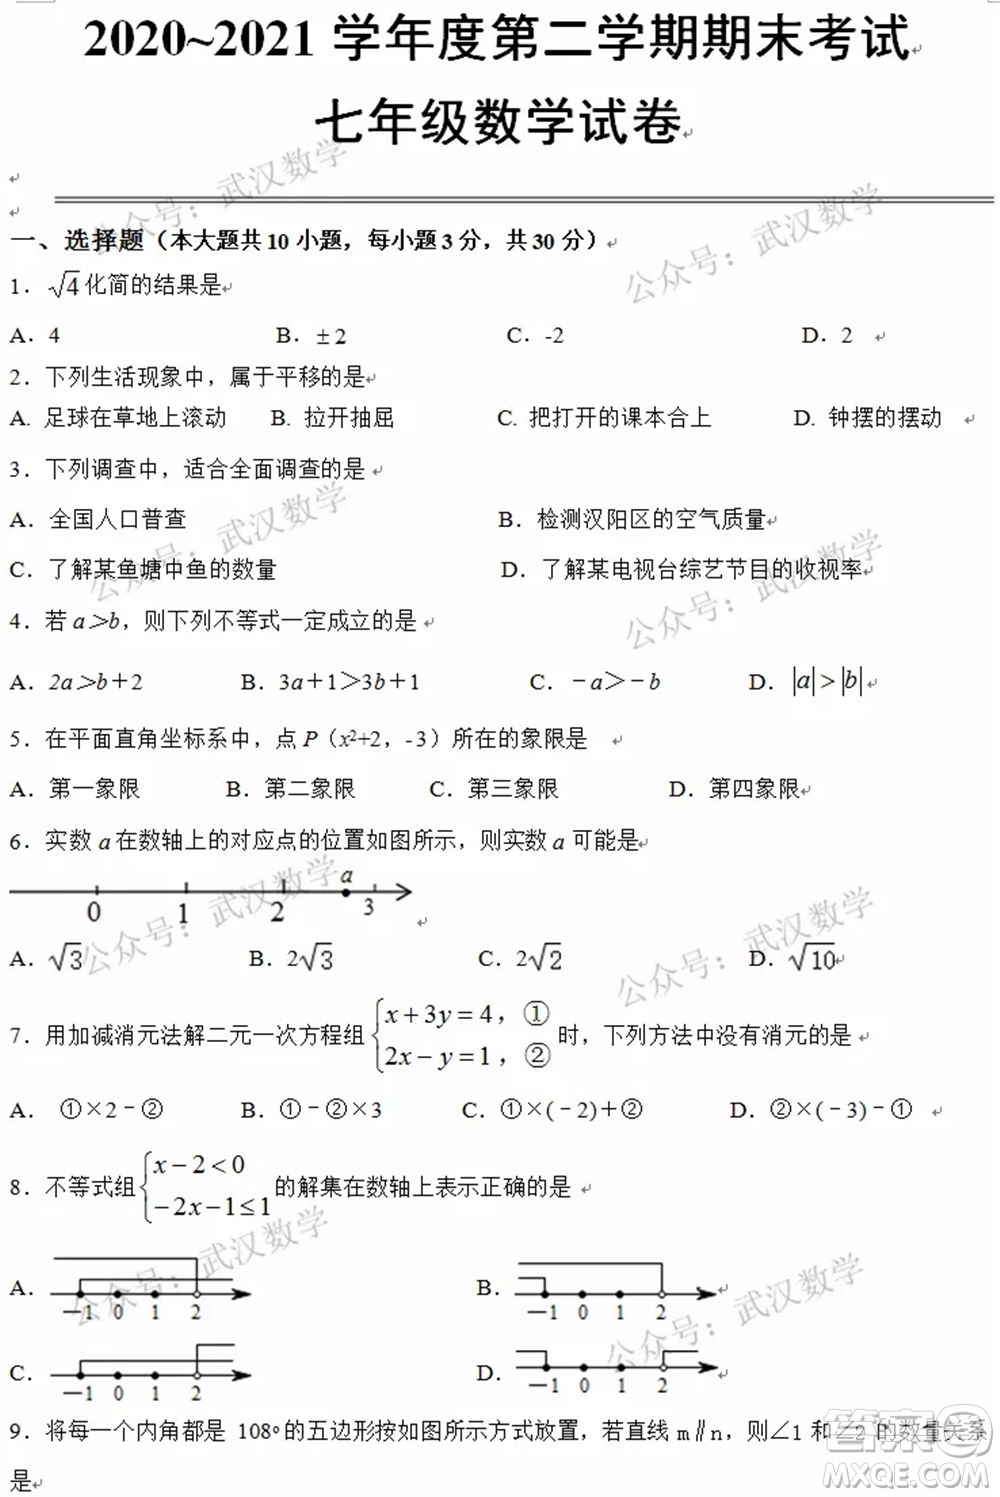 武汉市汉阳区2020-2021年度下学期七年级期末考试数学试卷及答案